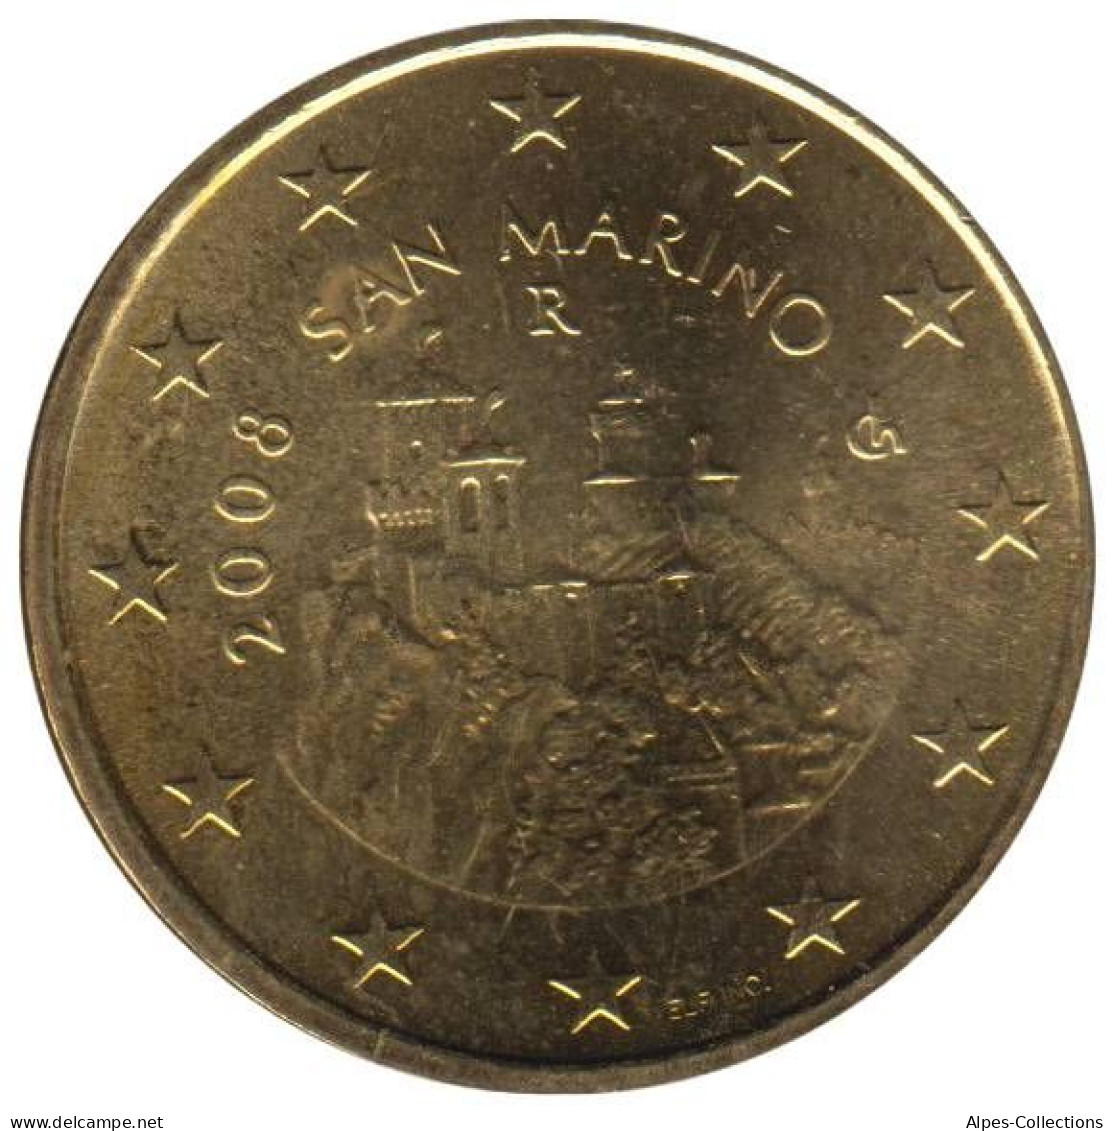 SA05008.1 - SAINT MARIN - 50 Cents - 2008 - San Marino